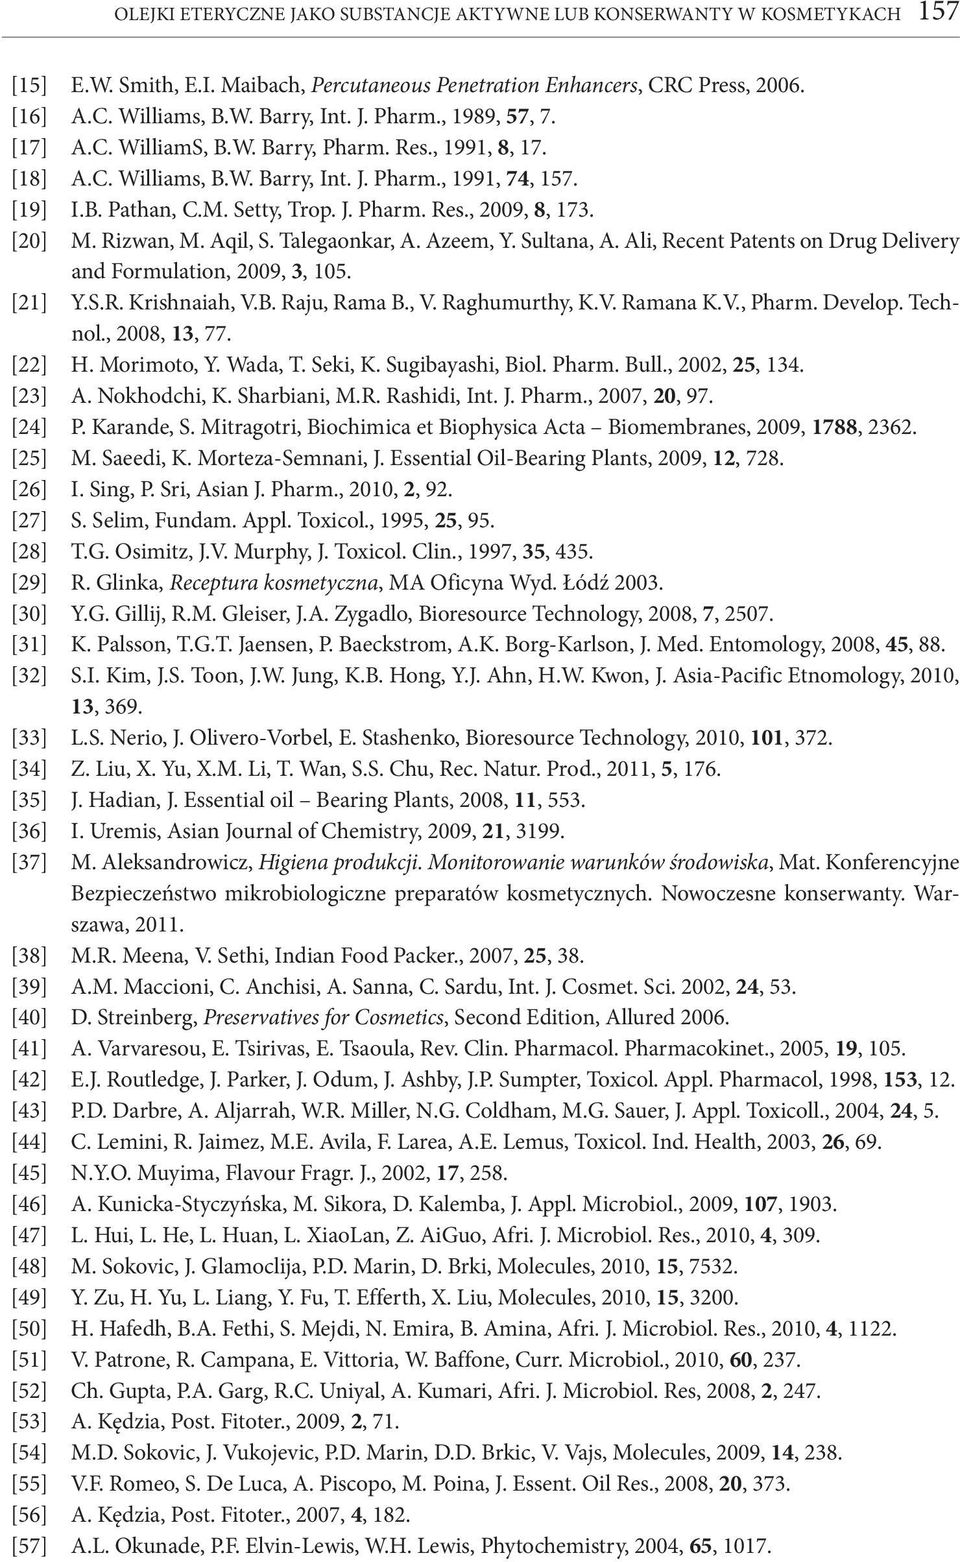 [20] M. Rizwan, M. Aqil, S. Talegaonkar, A. Azeem, Y. Sultana, A. Ali, Recent Patents on Drug Delivery and Formulation, 2009, 3, 105. [21] Y.S.R. Krishnaiah, V.B. Raju, Rama B., V. Raghumurthy, K.V. Ramana K.